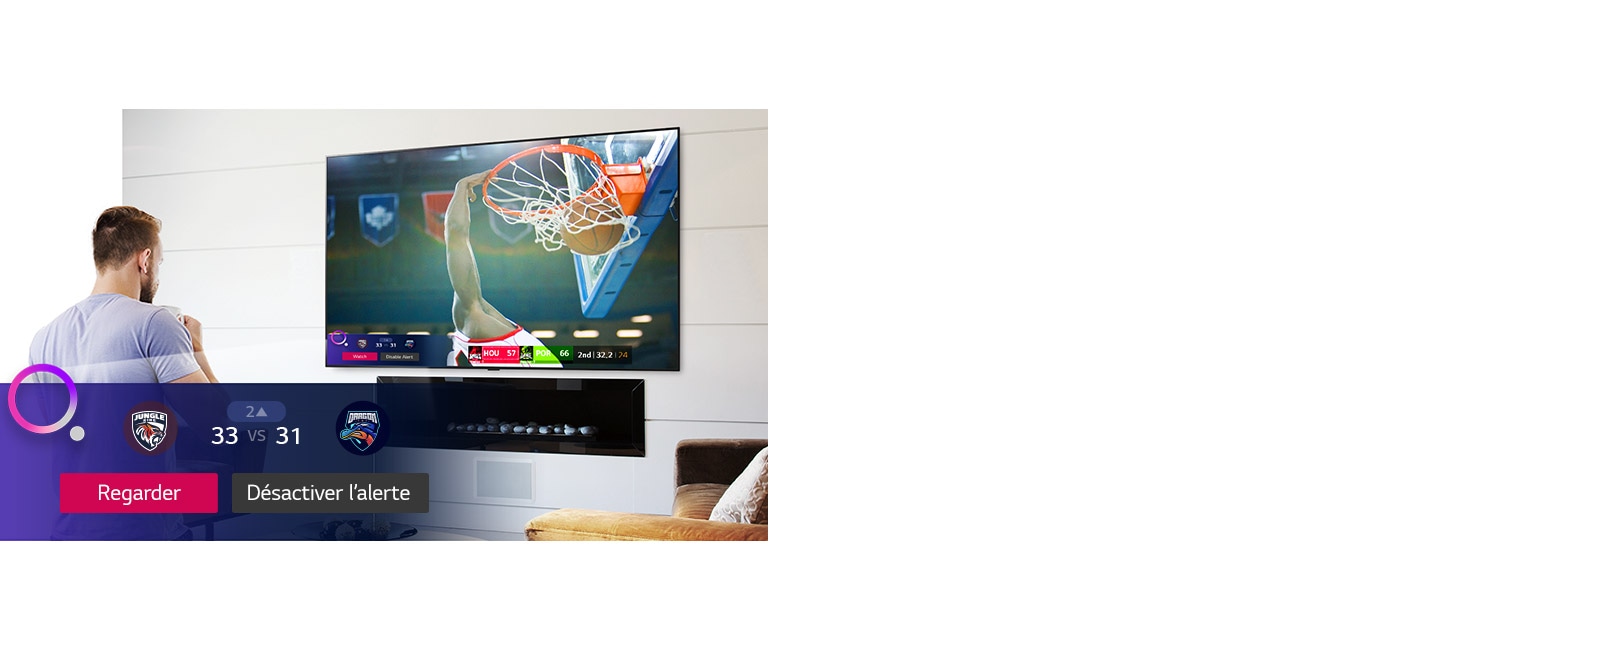 Écran de téléviseur montrant une scène d'un match de basket-ball avec une Sports Alert